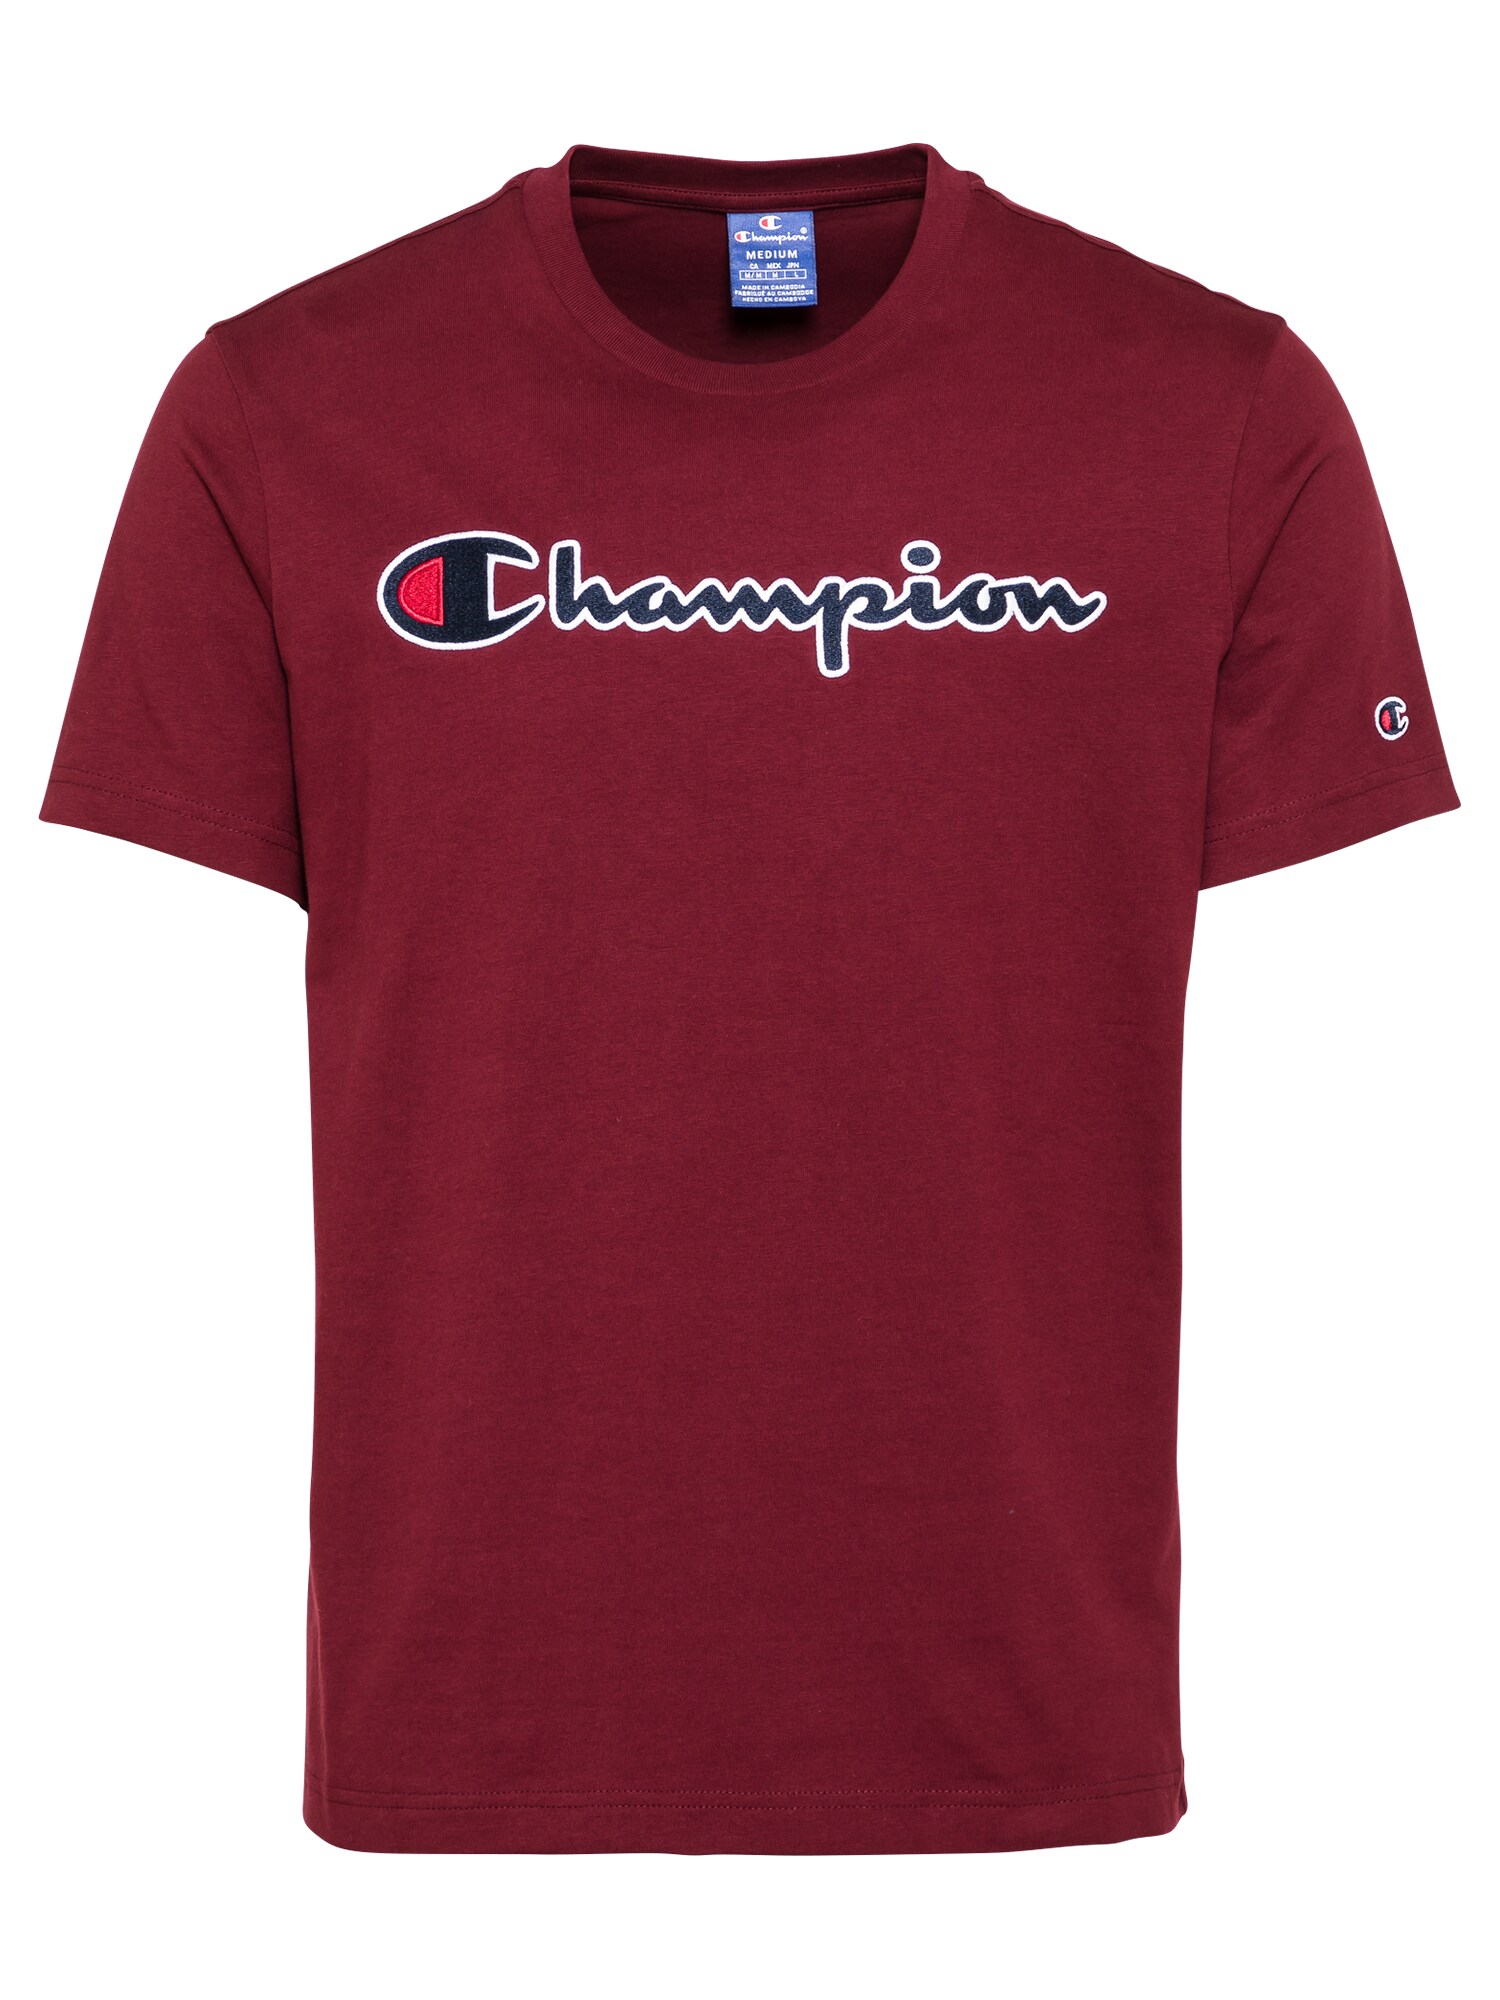 Champion Authentic Athletic Apparel Marškinėliai  vyno raudona spalva / balta / mėlyna